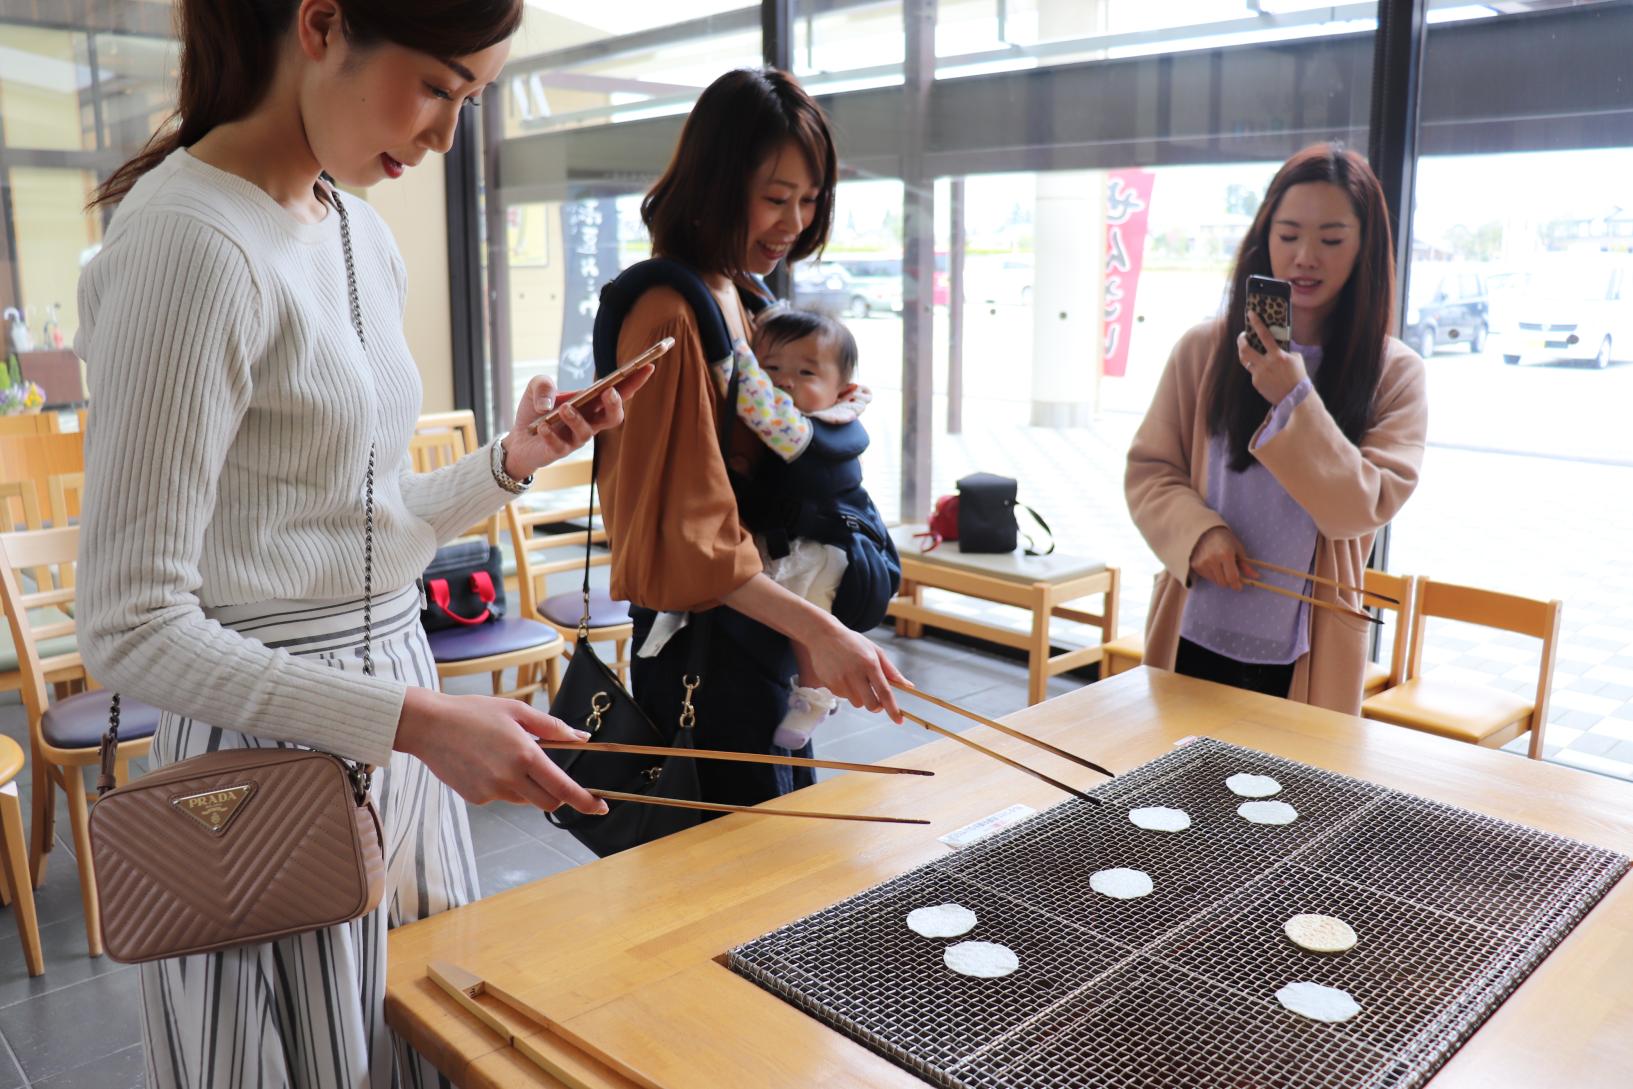 Enjoy snacks at the Shiroebi Senbei Factory in Tateyama (two photos)-0